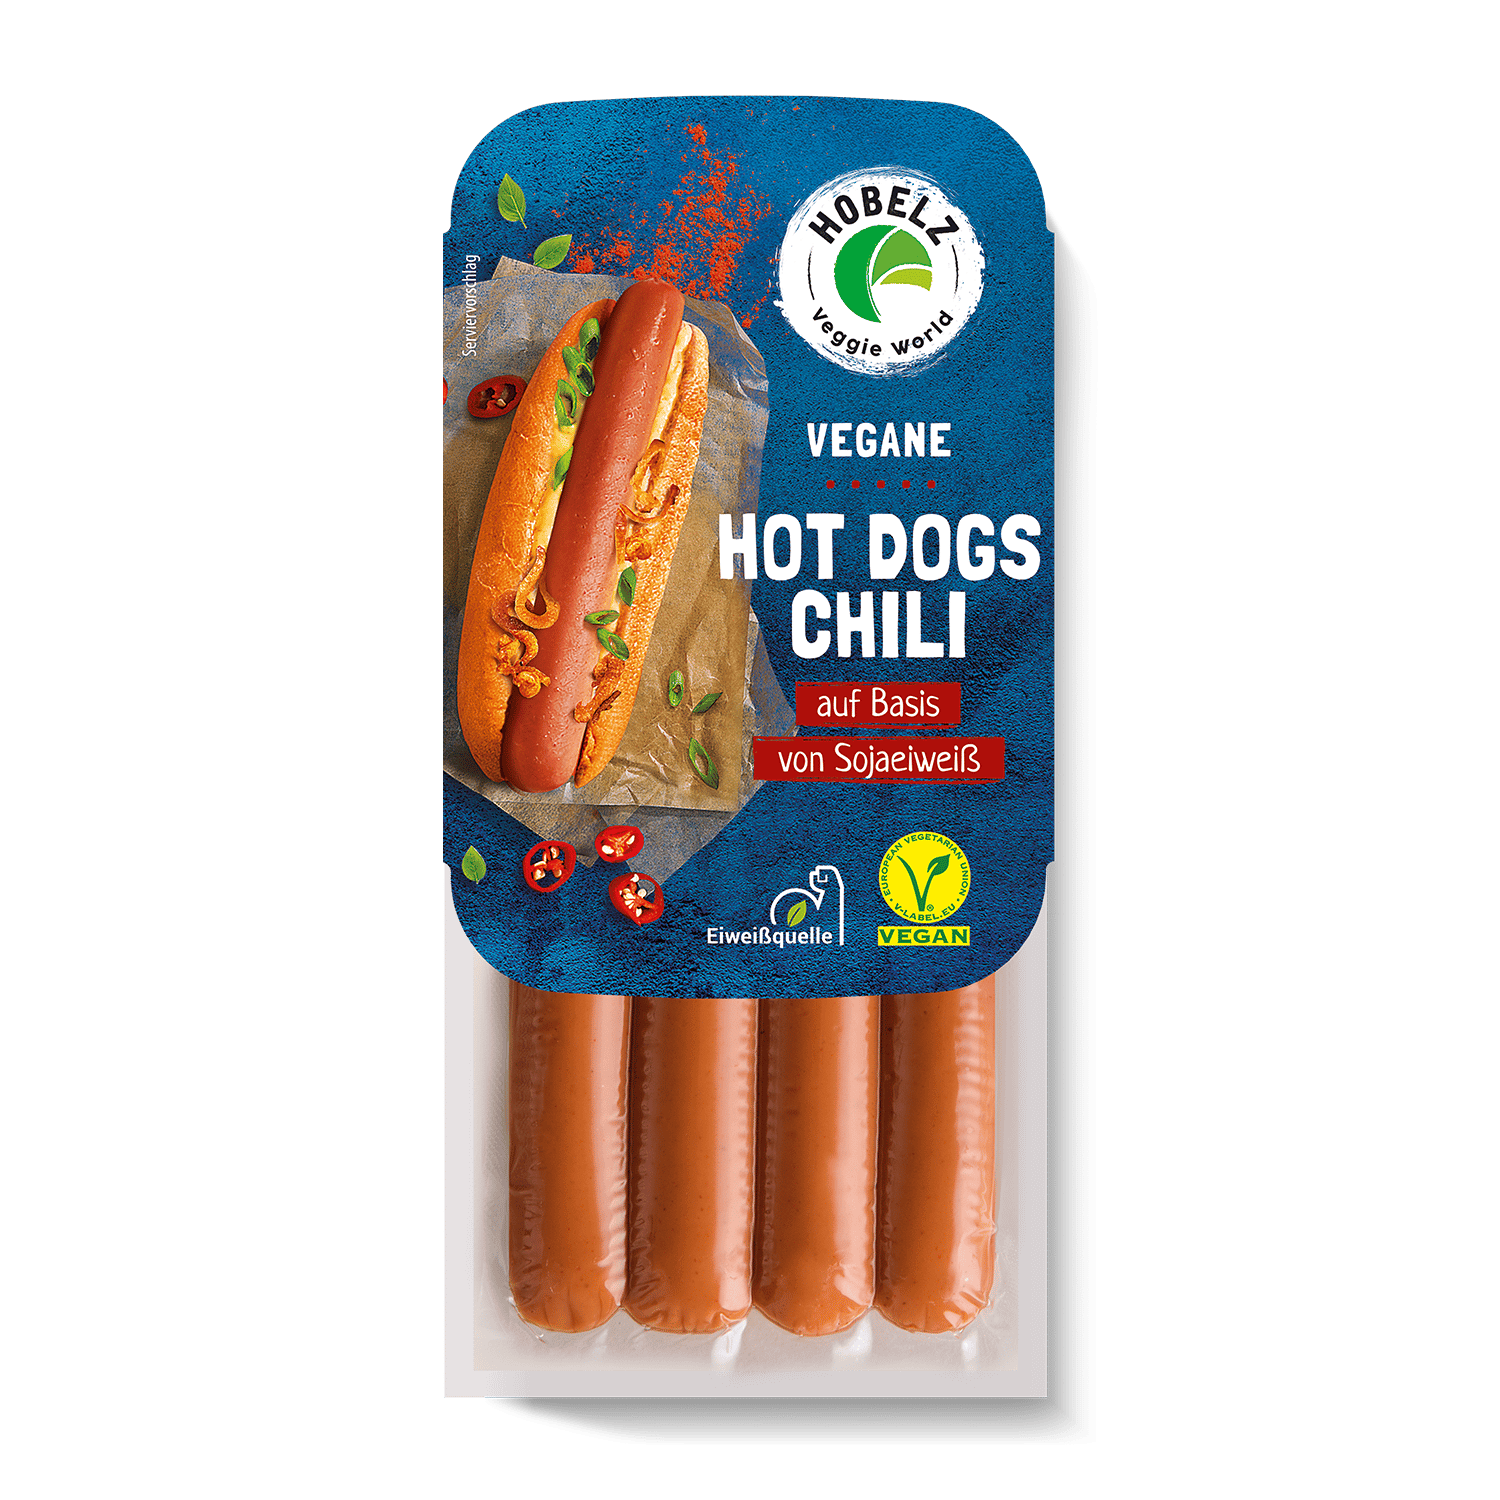 Vegan Hot Dogs Chili, 200g